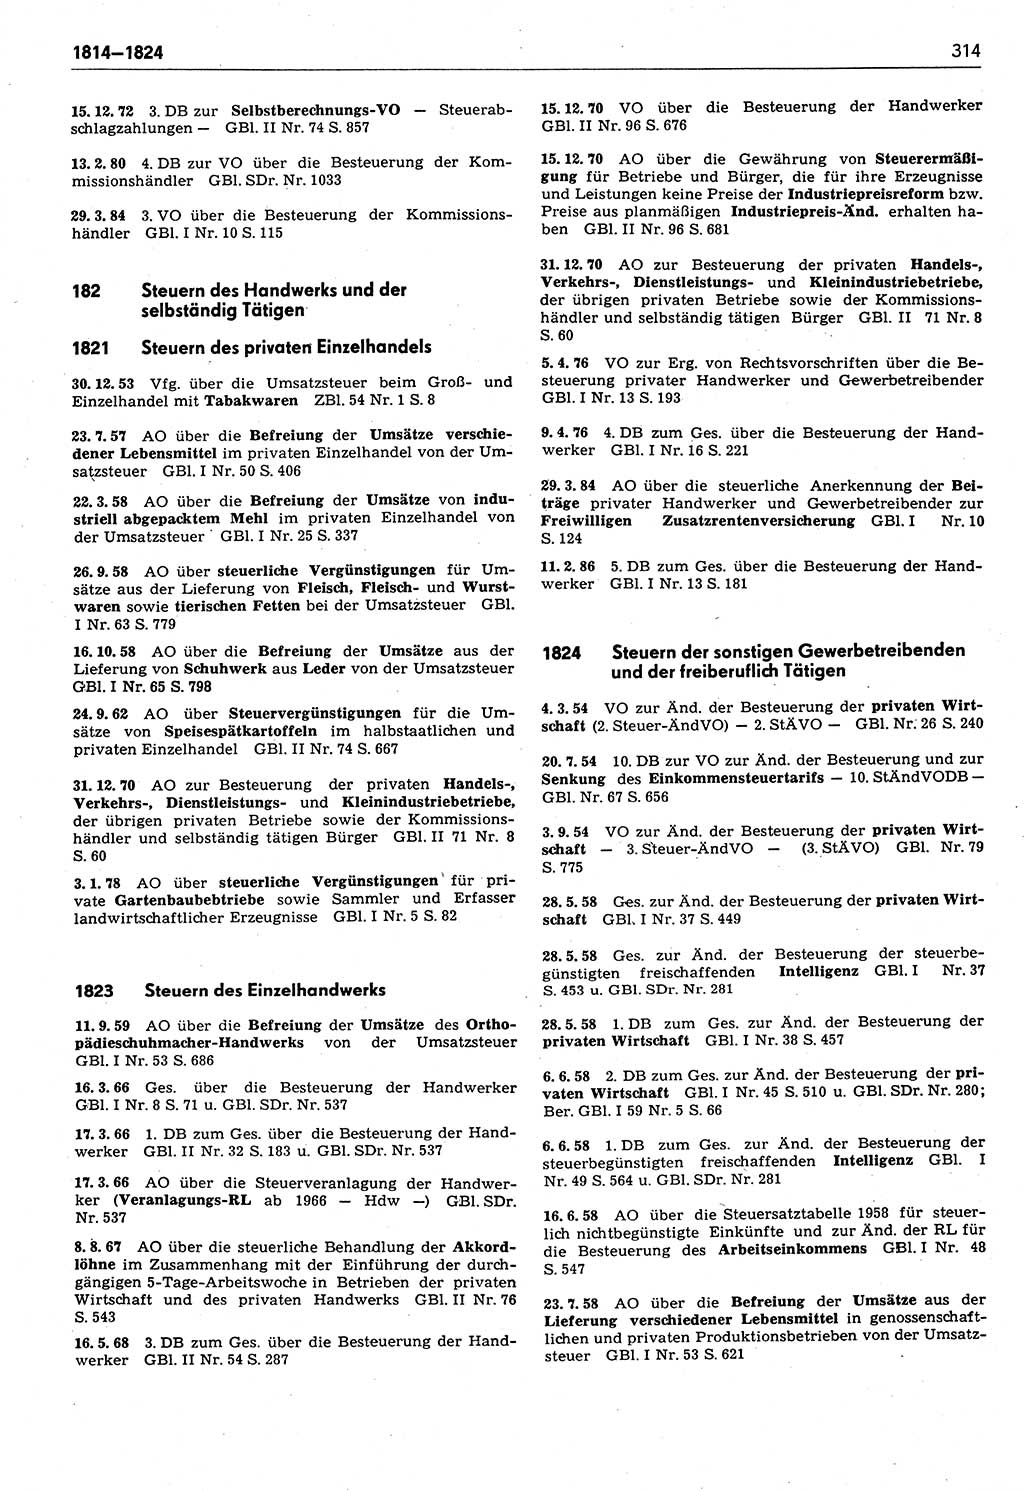 Das geltende Recht der Deutschen Demokratischen Republik (DDR) 1949-1988, Seite 314 (Gelt. R. DDR 1949-1988, S. 314)